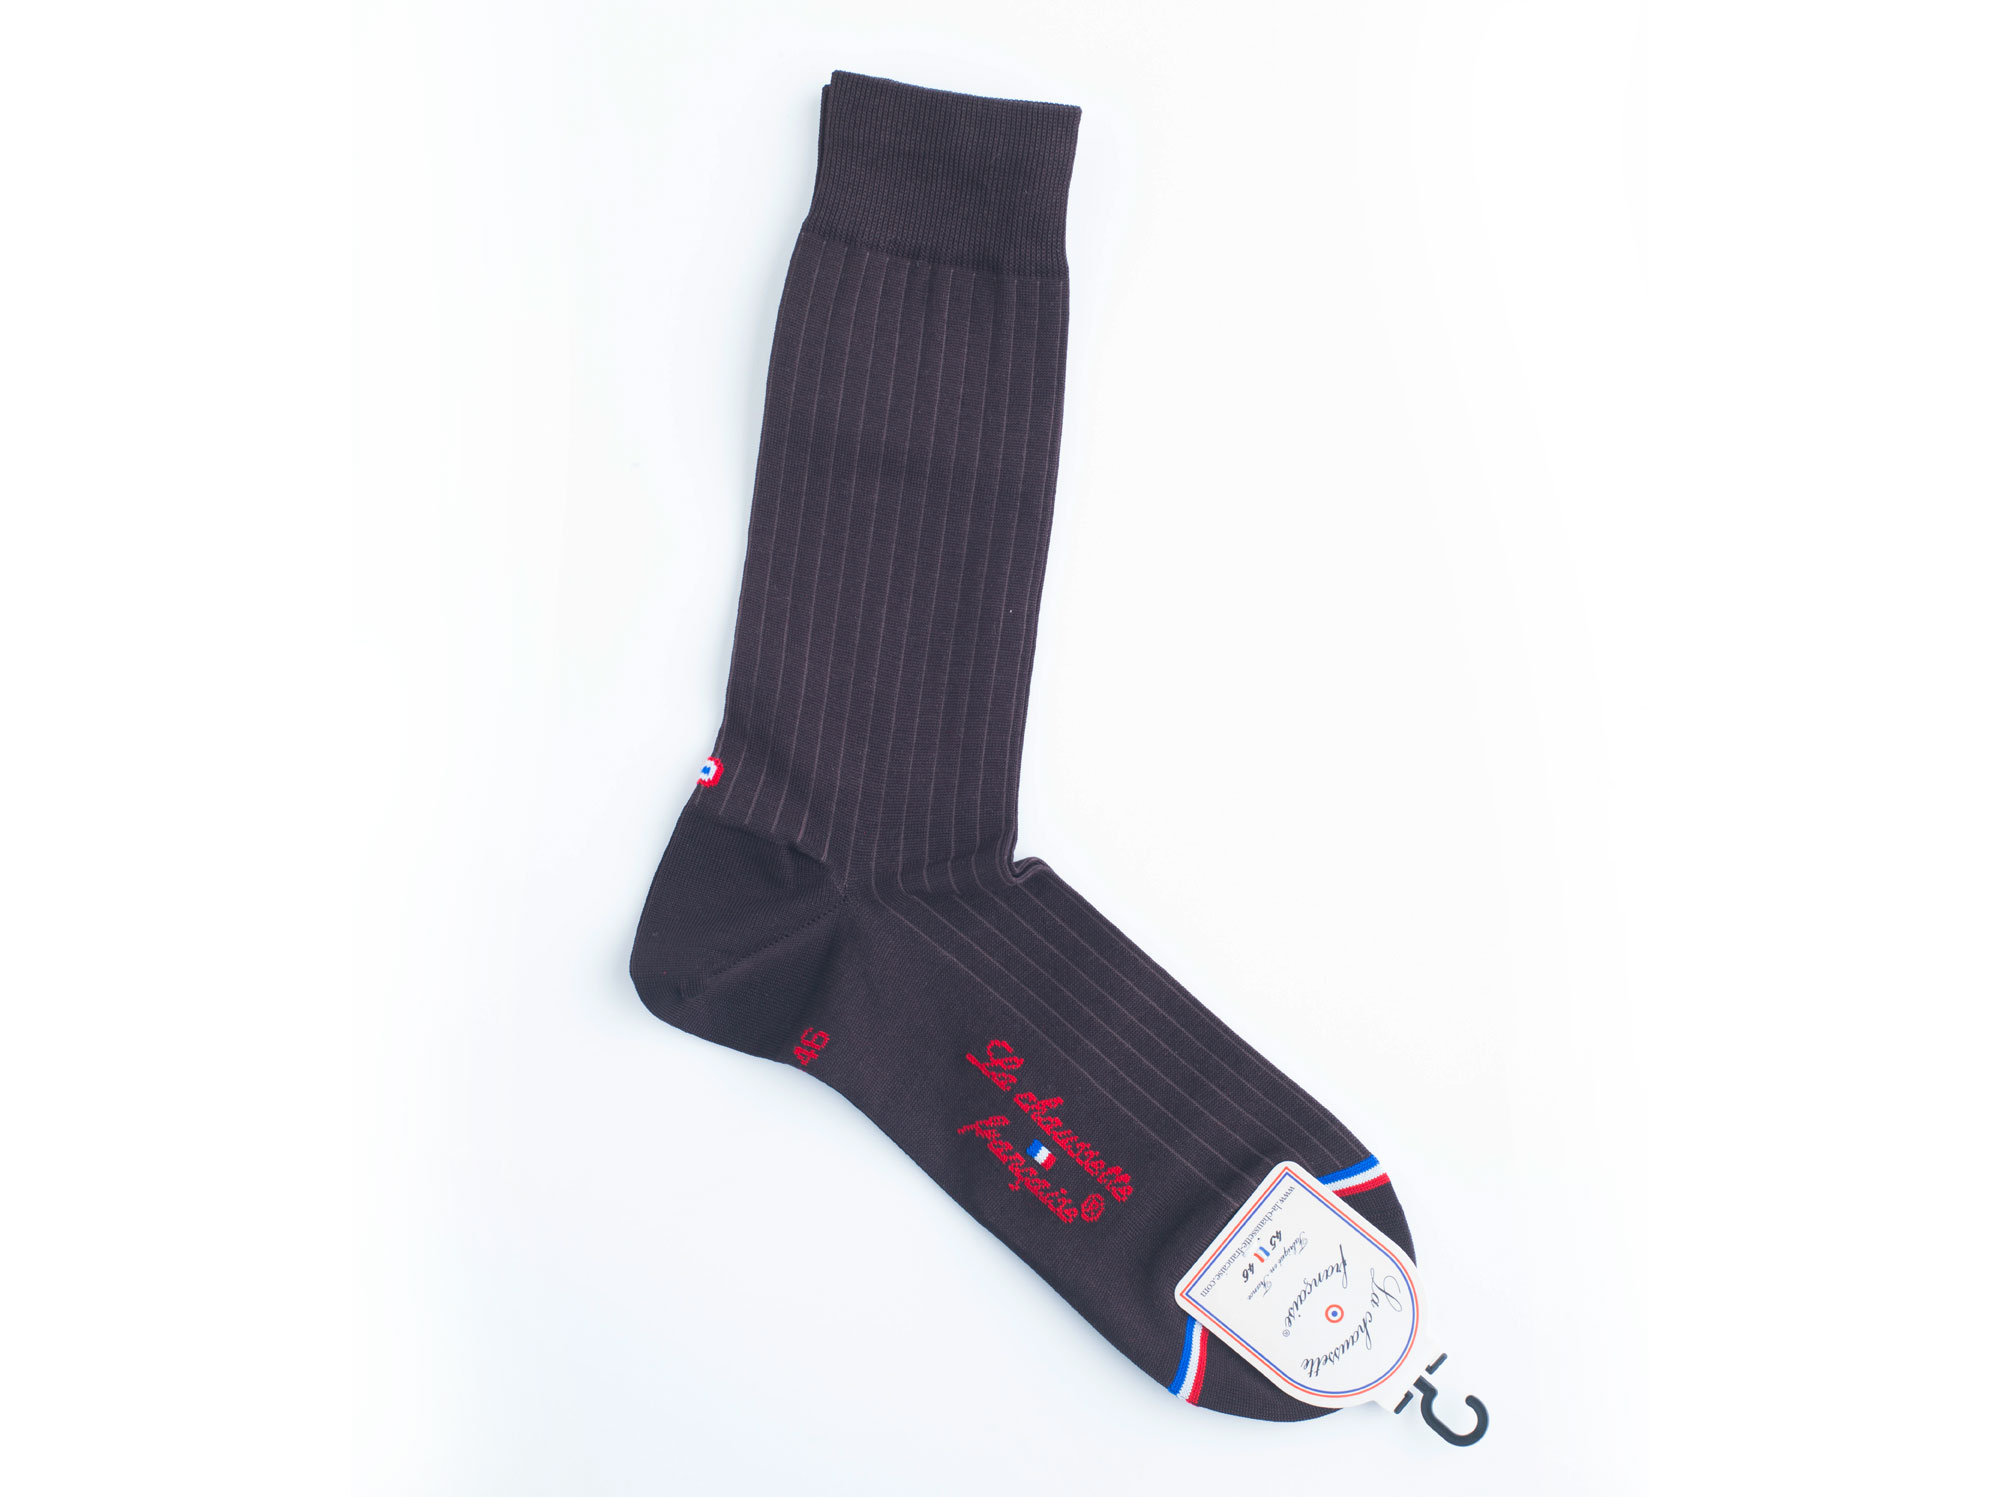 Socks La chaussette francaise